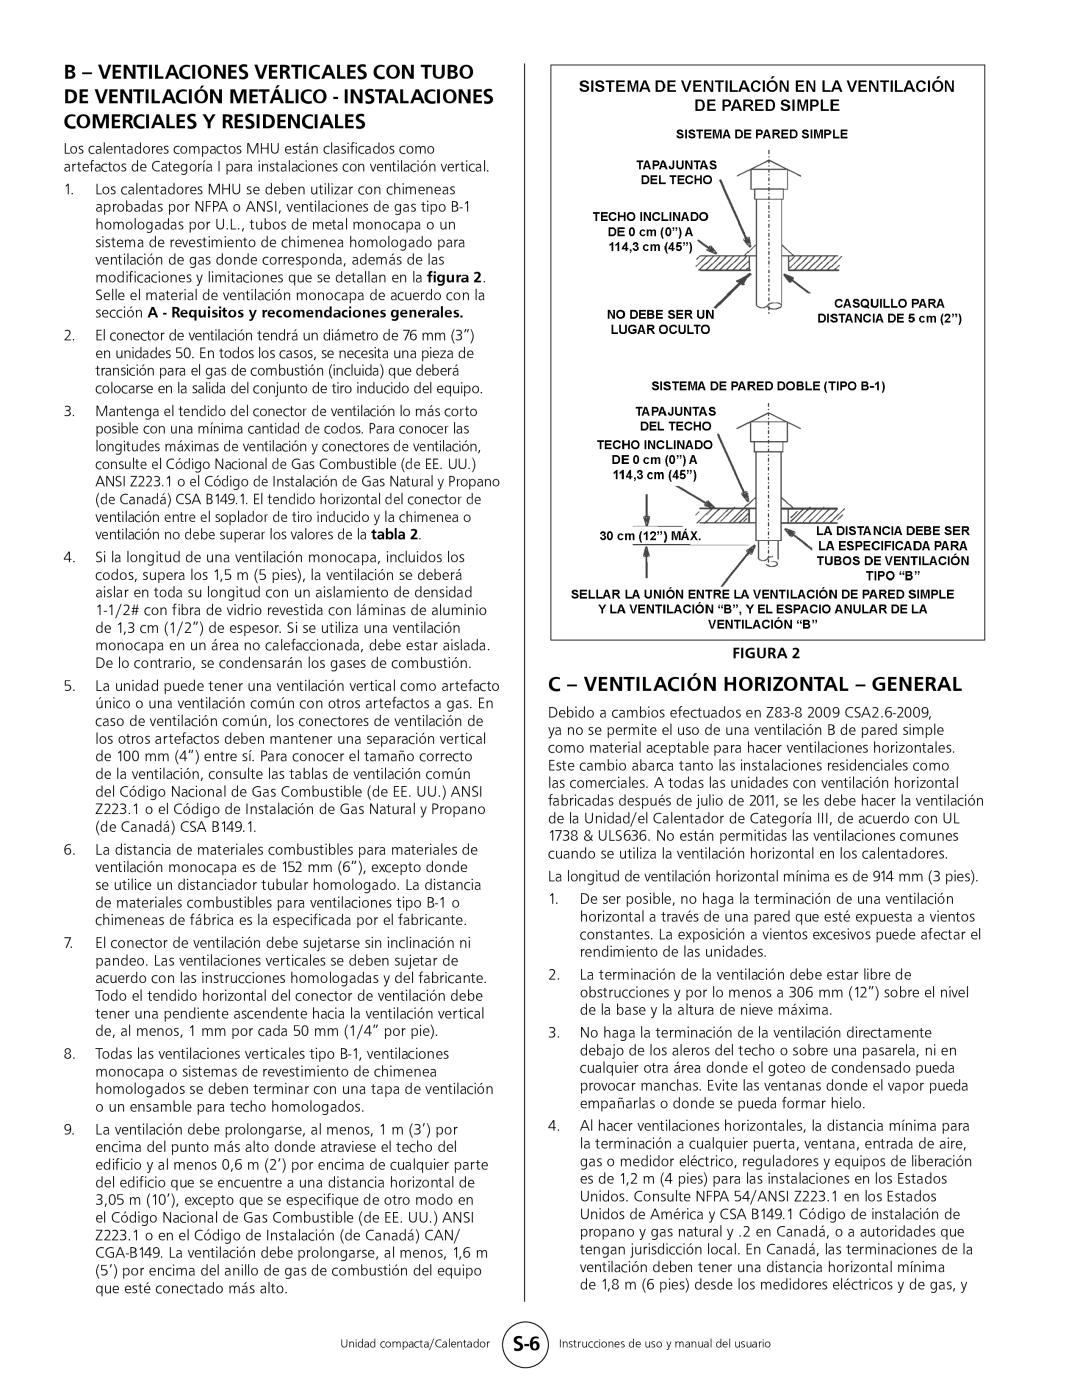 Mr. Heater MHU 50, MHU 80 owner manual C - Ventilación Horizontal - General, S-6 Instrucciones de uso y manual del usuario 